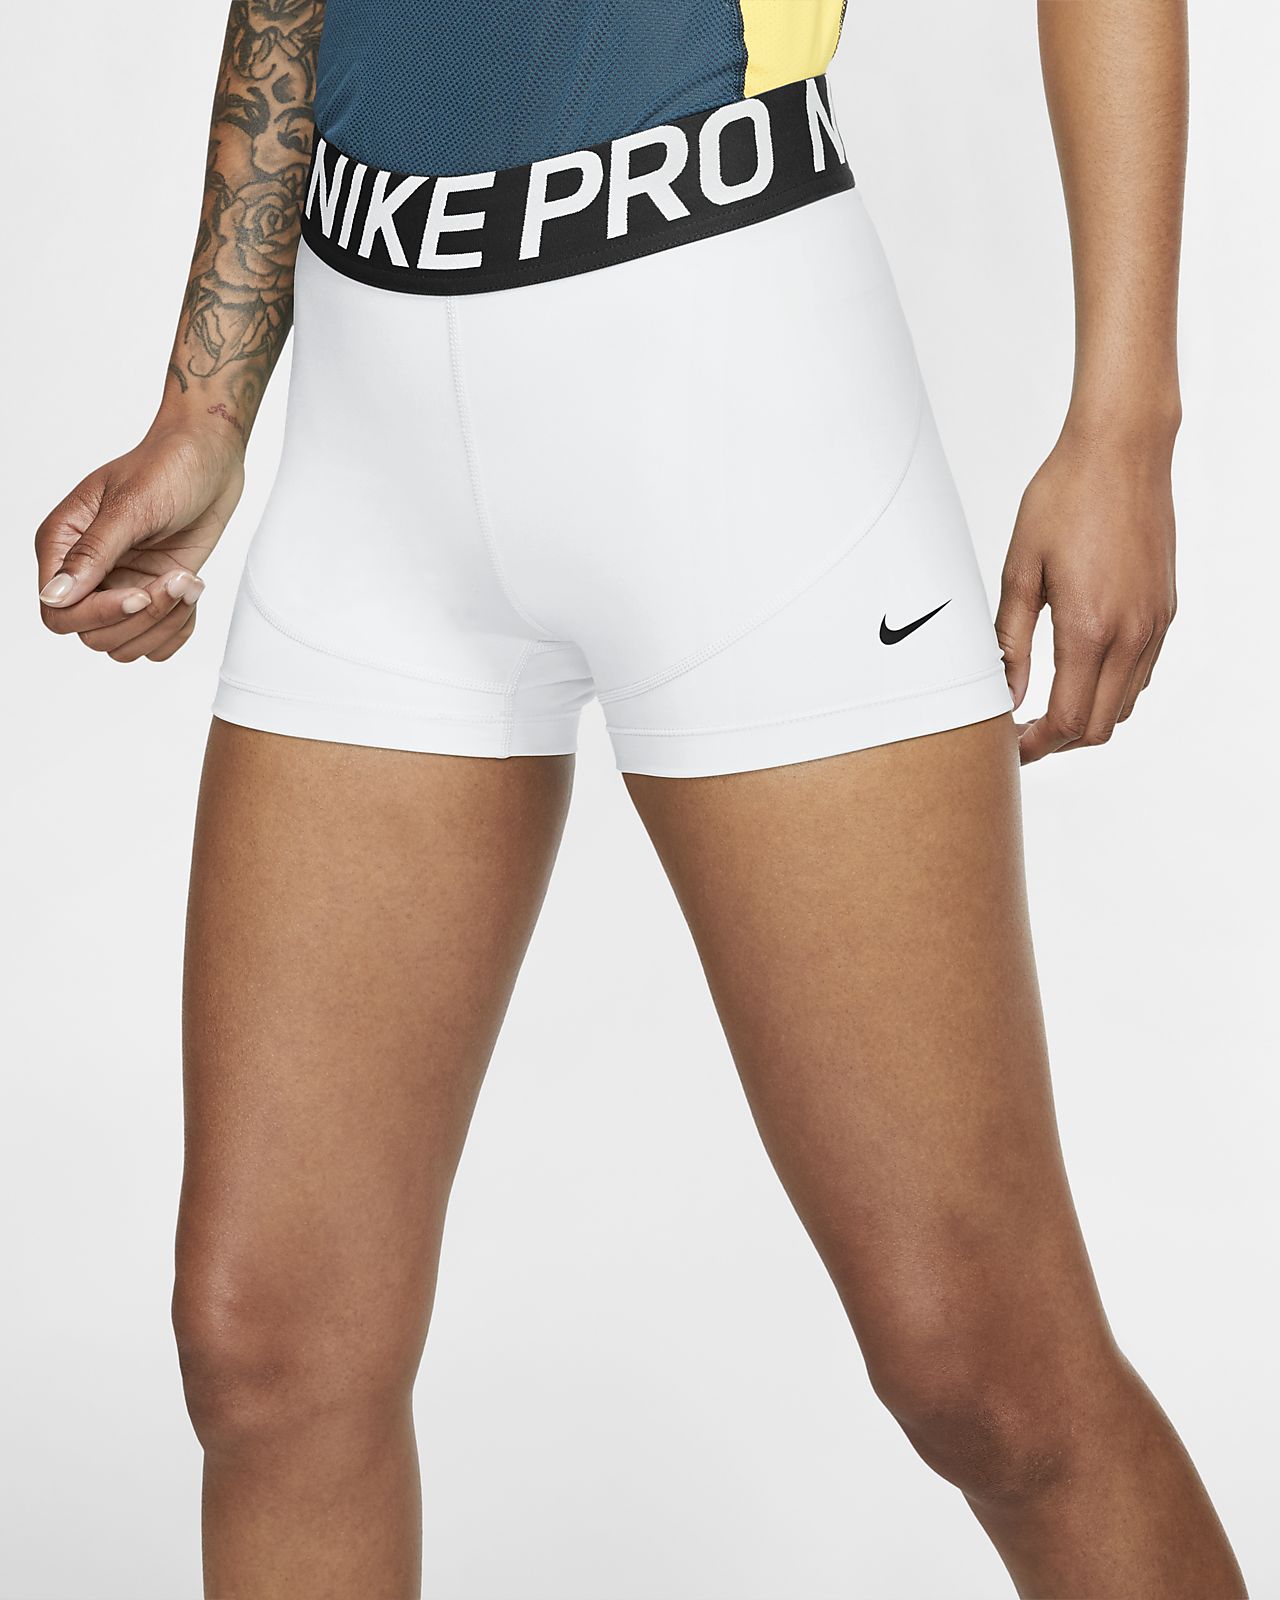 nike pro women's 8 inch shorts